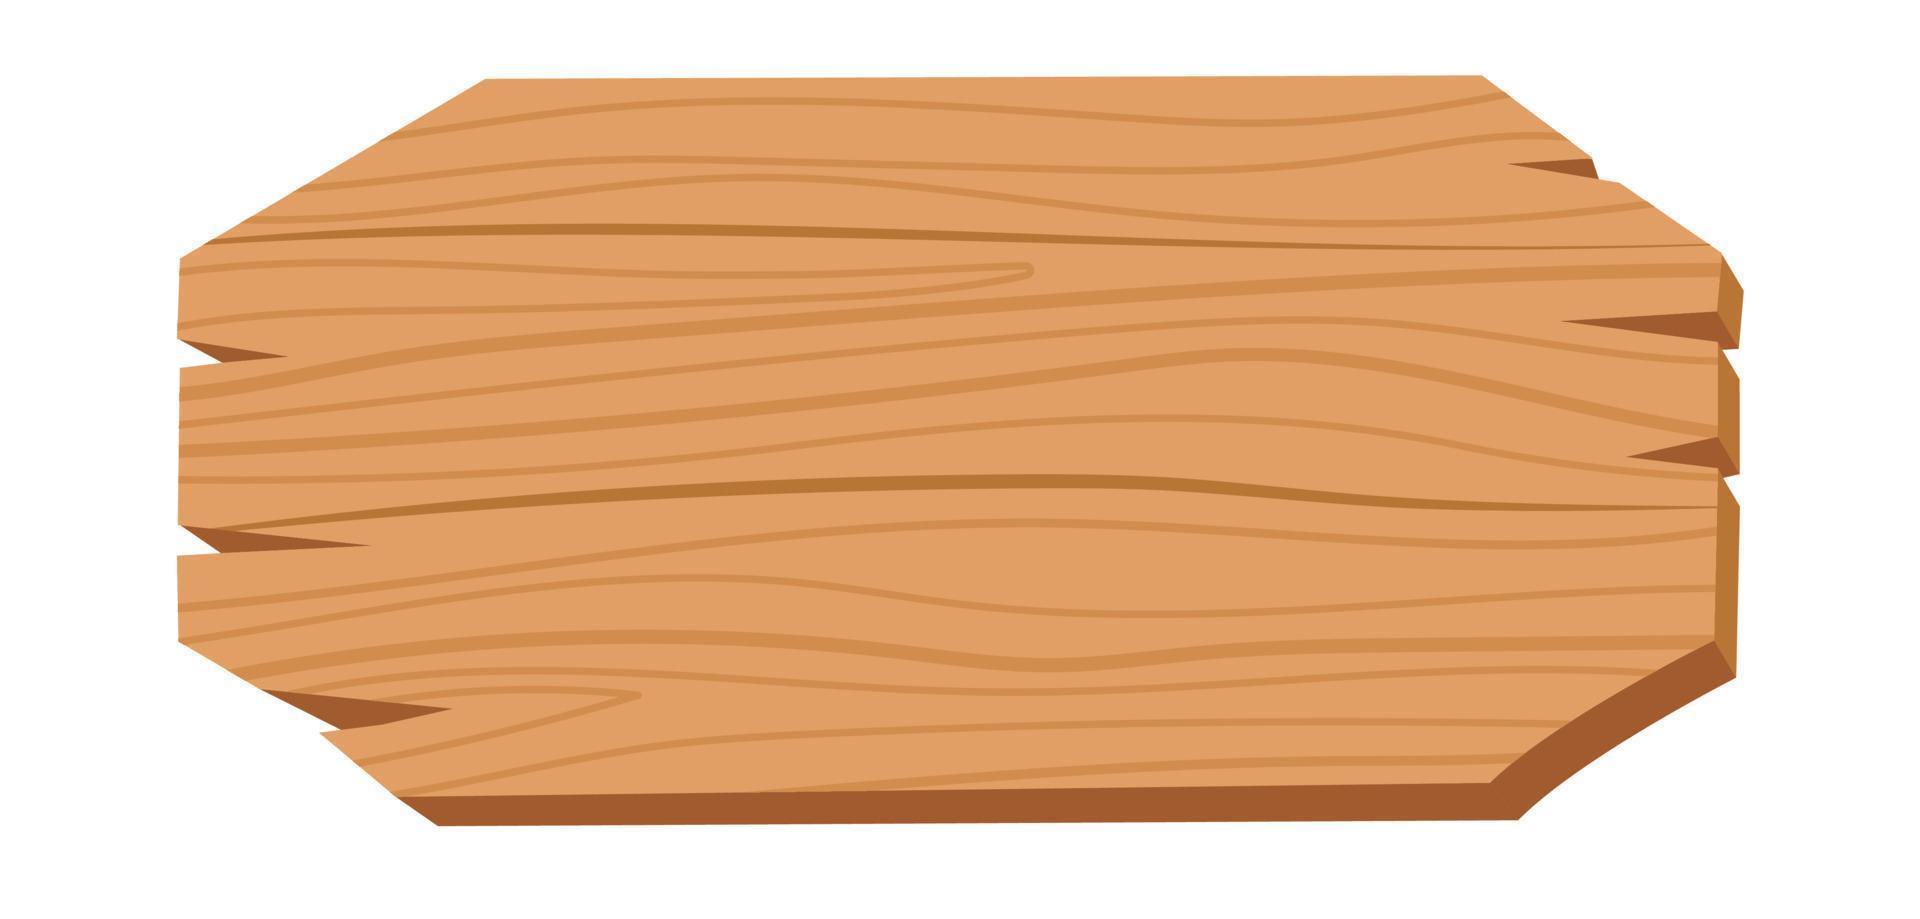 trä- bricka baner, trä- planka tallrik vektor